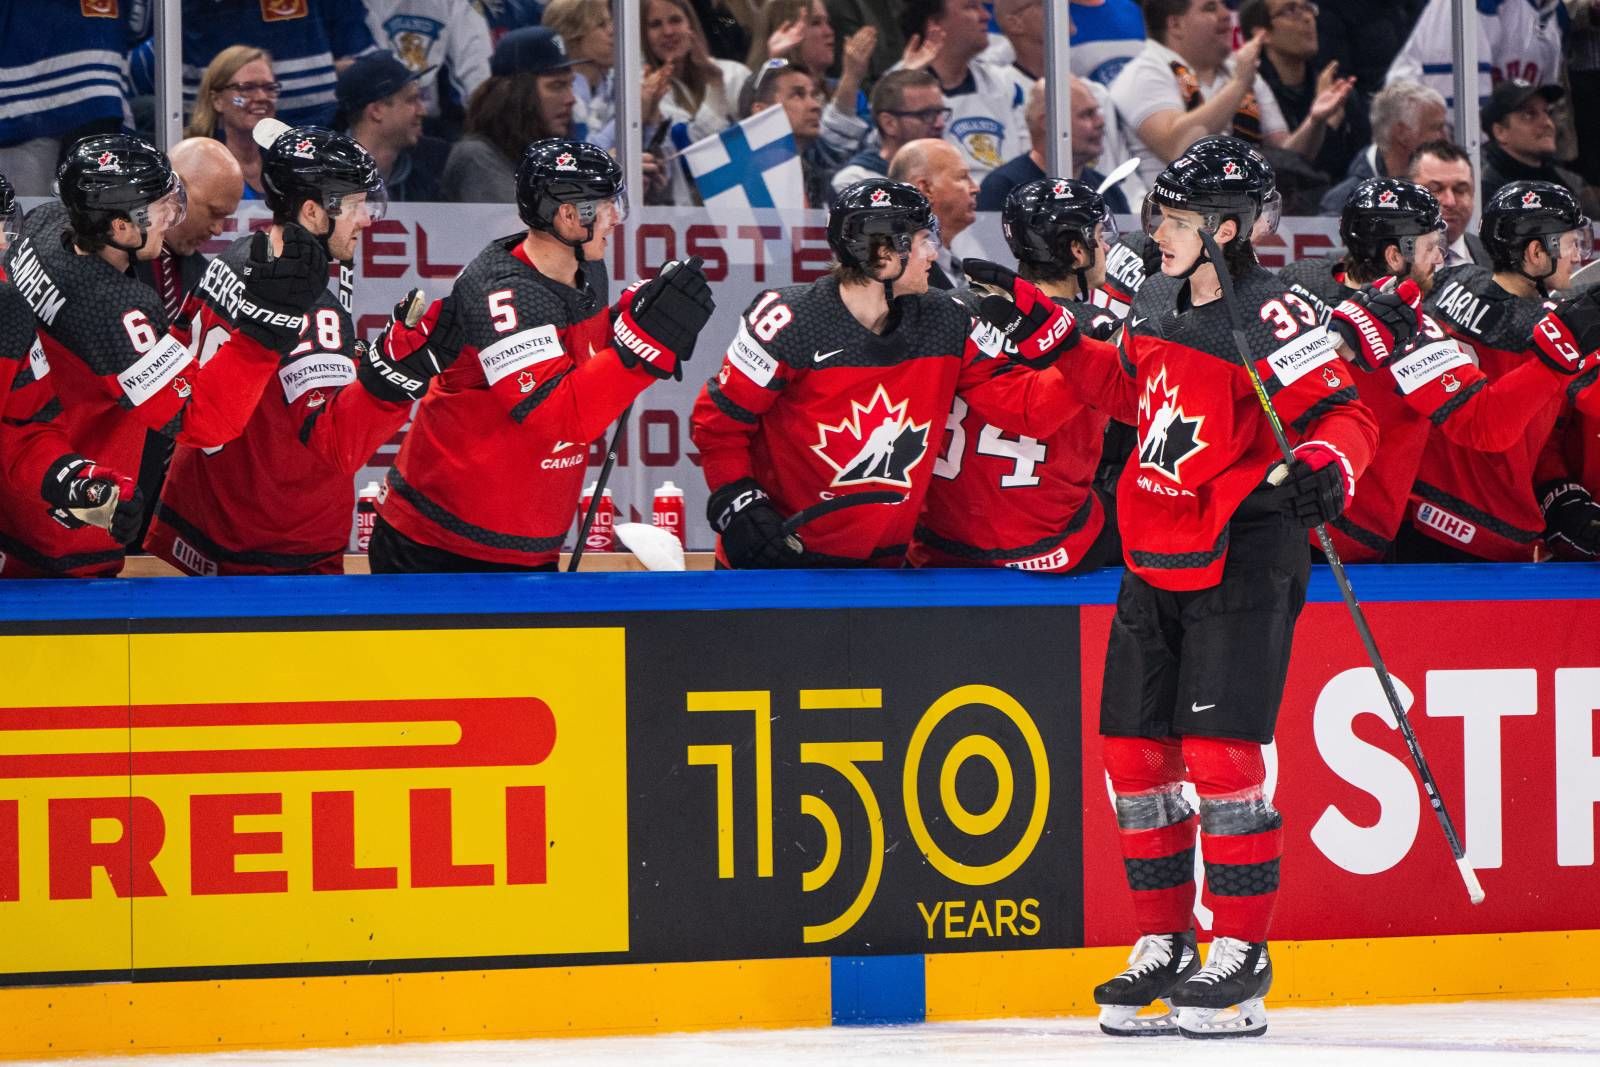 Канада — Чехия прогноз на матч 28 мая на ЧМ-2022 по хоккею: ставки и коэффициенты на игру